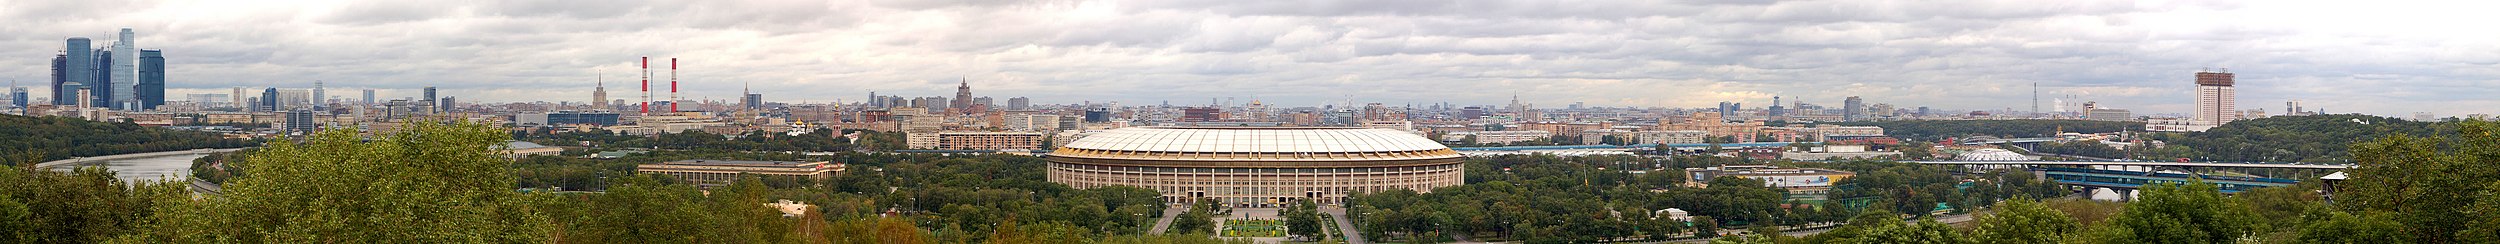 Panorama de Moscou vista da Colina dos Pardais (Vorobyovy Gory): Centro Internacional de Negócios, rio Moscou, Estádio Lujniki, Estação Vorobiovy Gory e a sede da Academia de Ciências da Rússia.